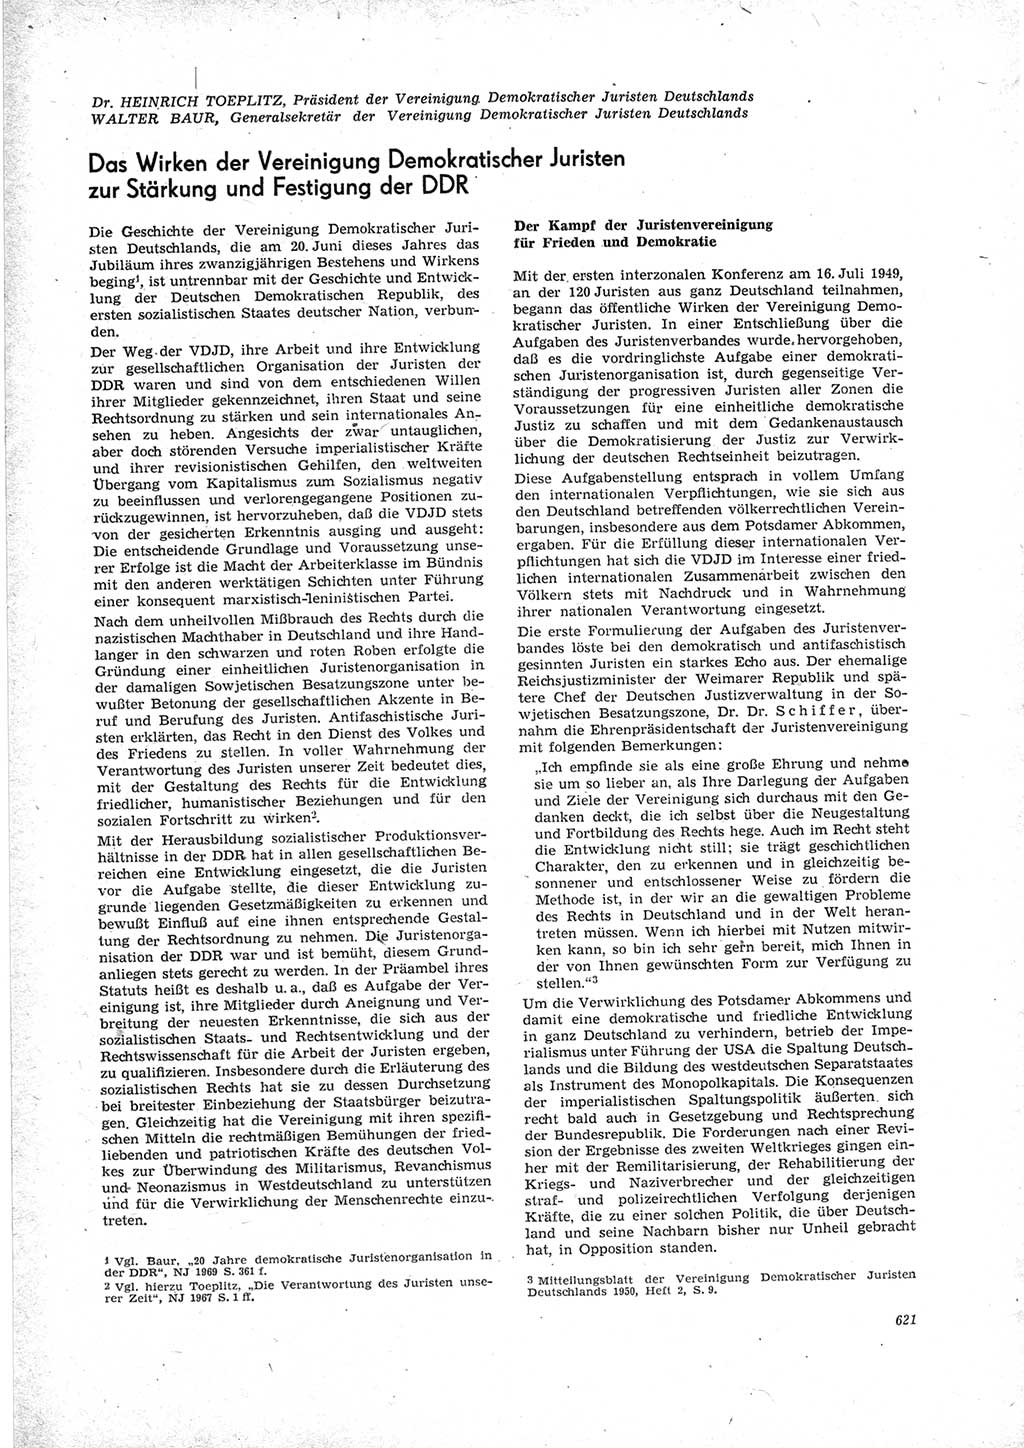 Neue Justiz (NJ), Zeitschrift für Recht und Rechtswissenschaft [Deutsche Demokratische Republik (DDR)], 23. Jahrgang 1969, Seite 621 (NJ DDR 1969, S. 621)